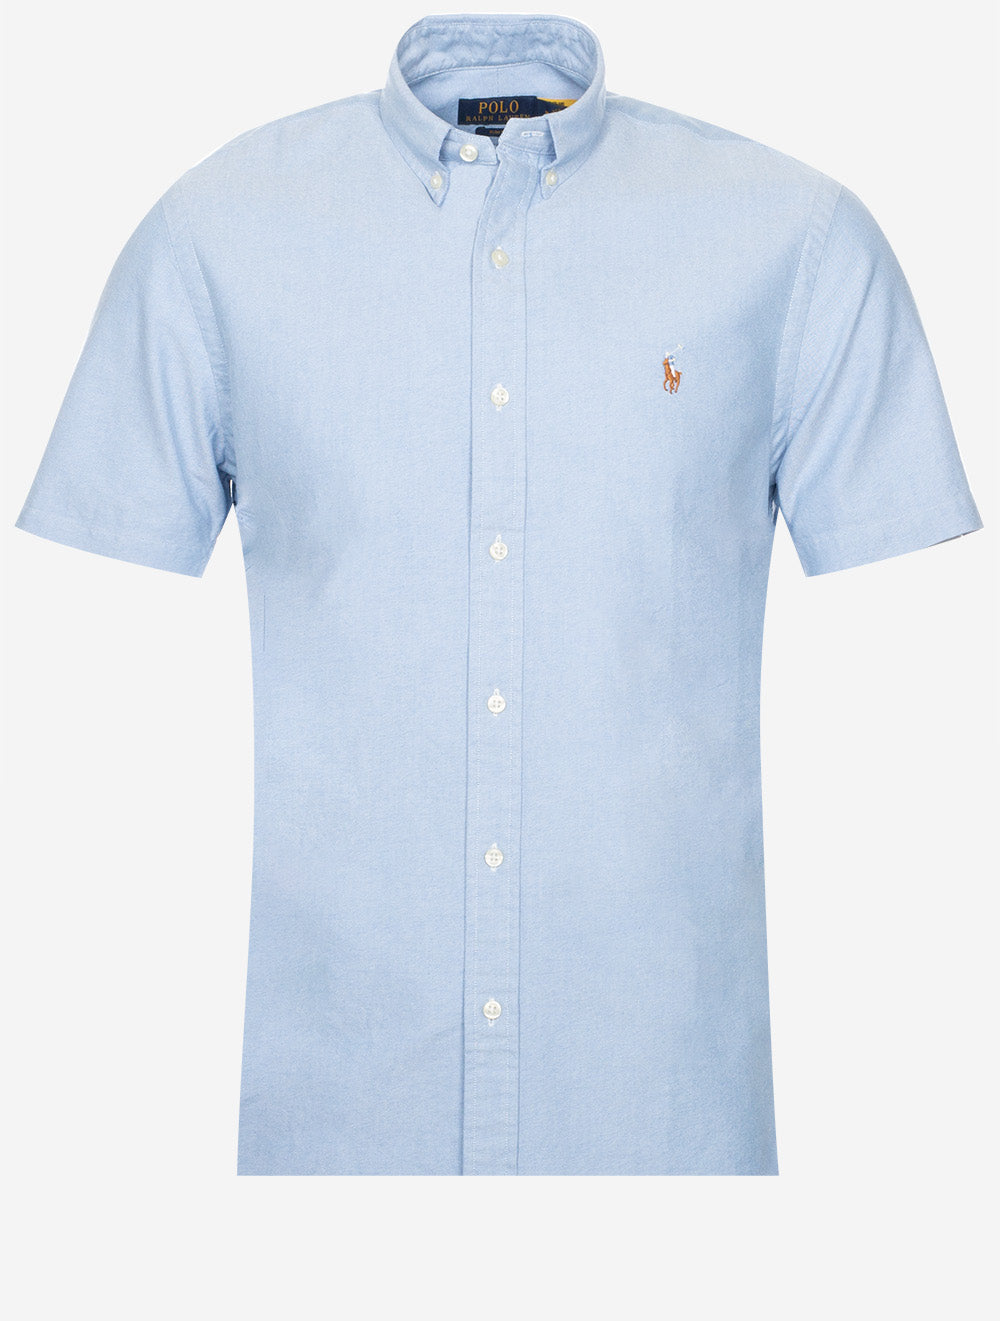 Slim Oxford Short Sleeve Shirt Blue